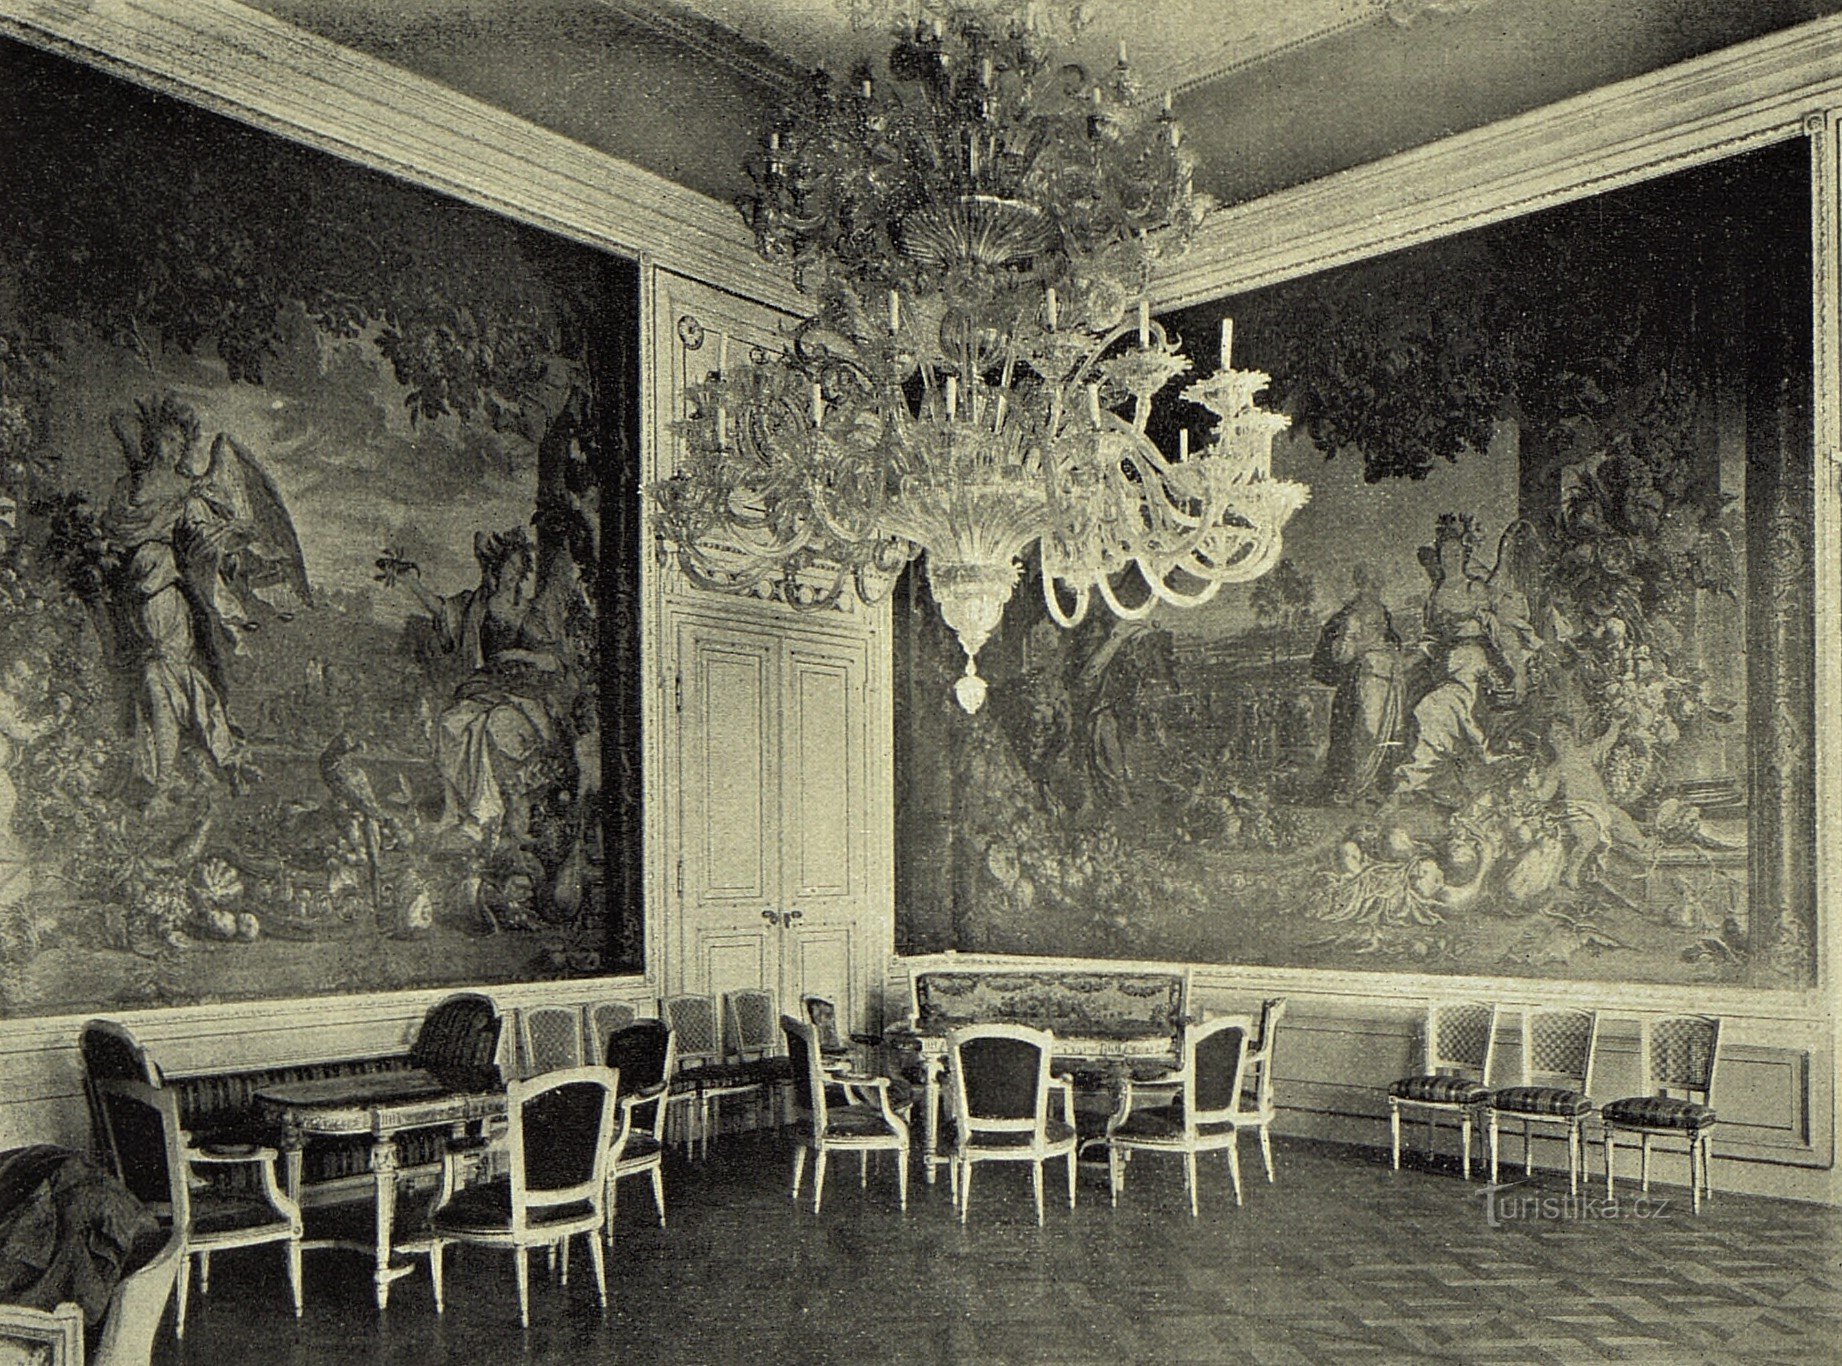 Una dintre așa-numitele săli de tapiserie ale Palatului Lobkovice în 1905